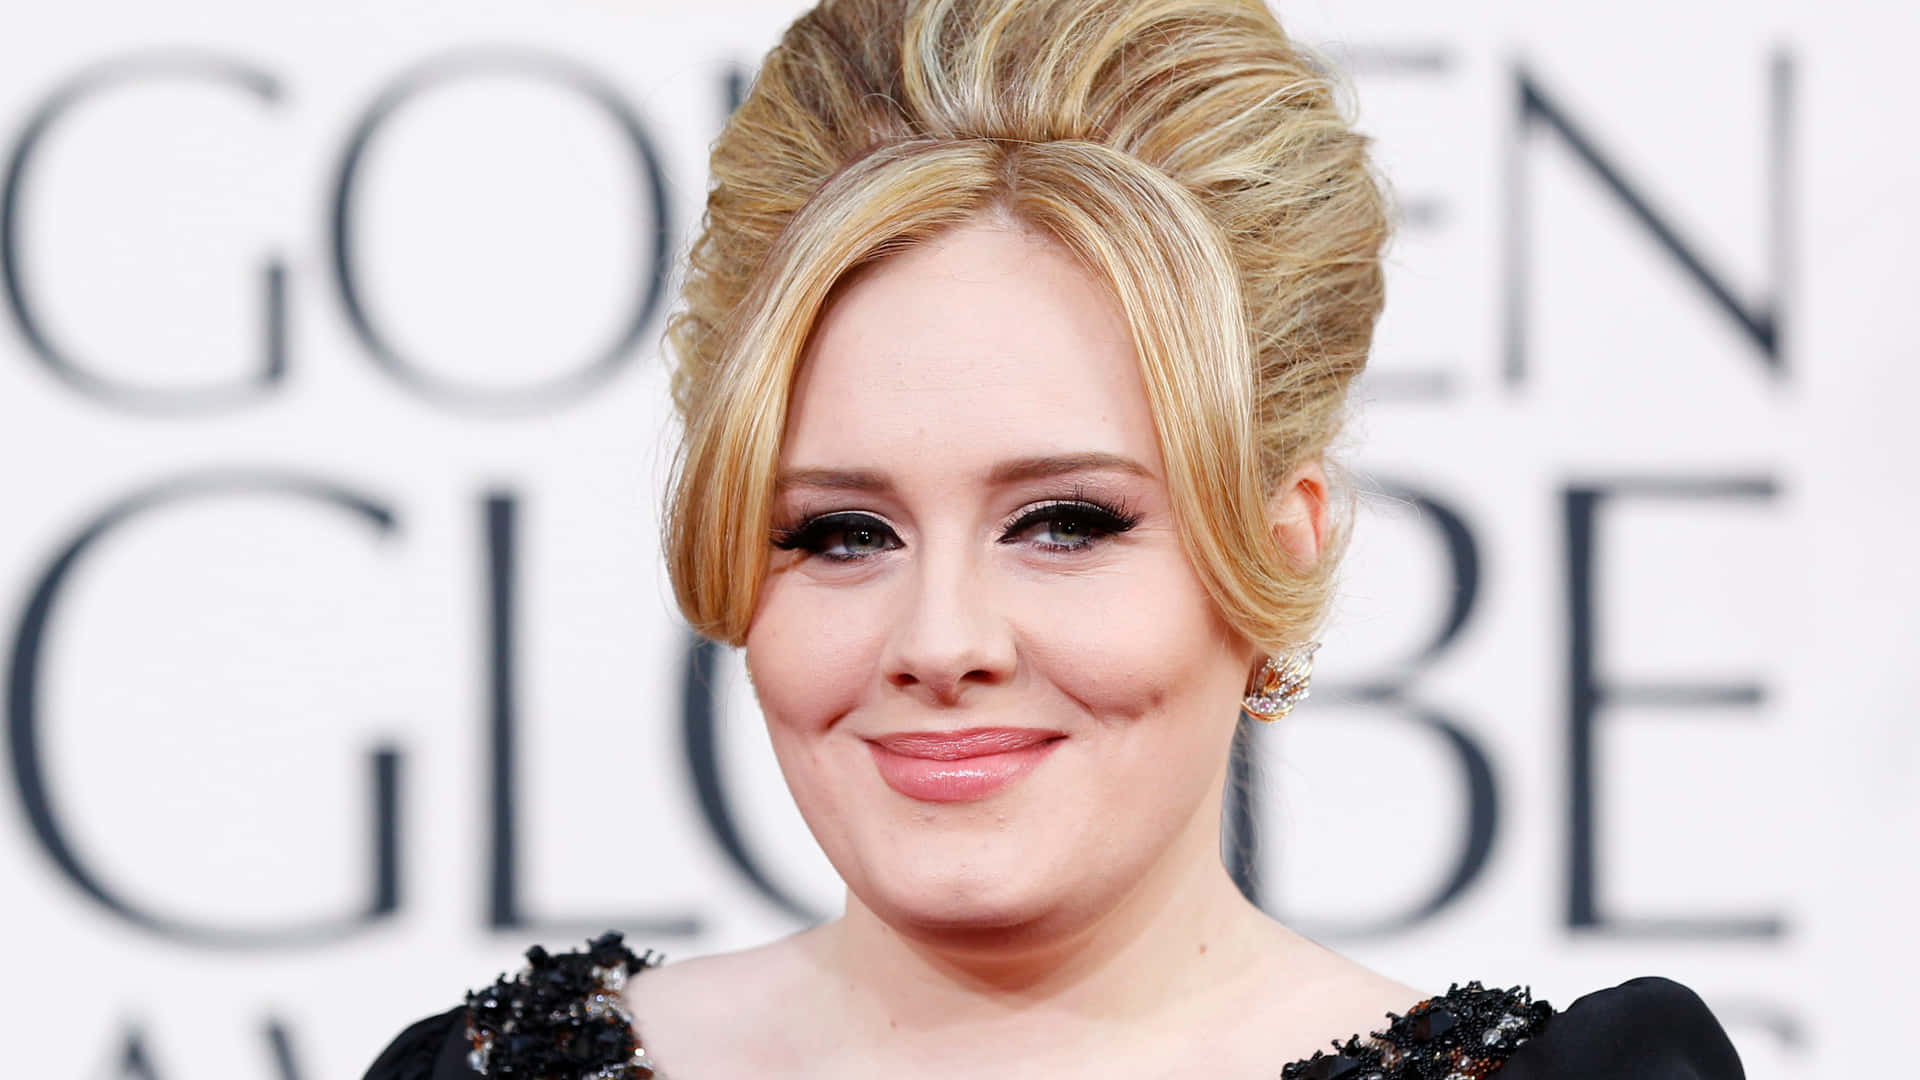 Laregina Indiscussa Del Pop, Adele, Sfoggia Un Vestito Blu Elettrico Con La Sua Iconica Voce E Le Sue Performance Mozzafiato.